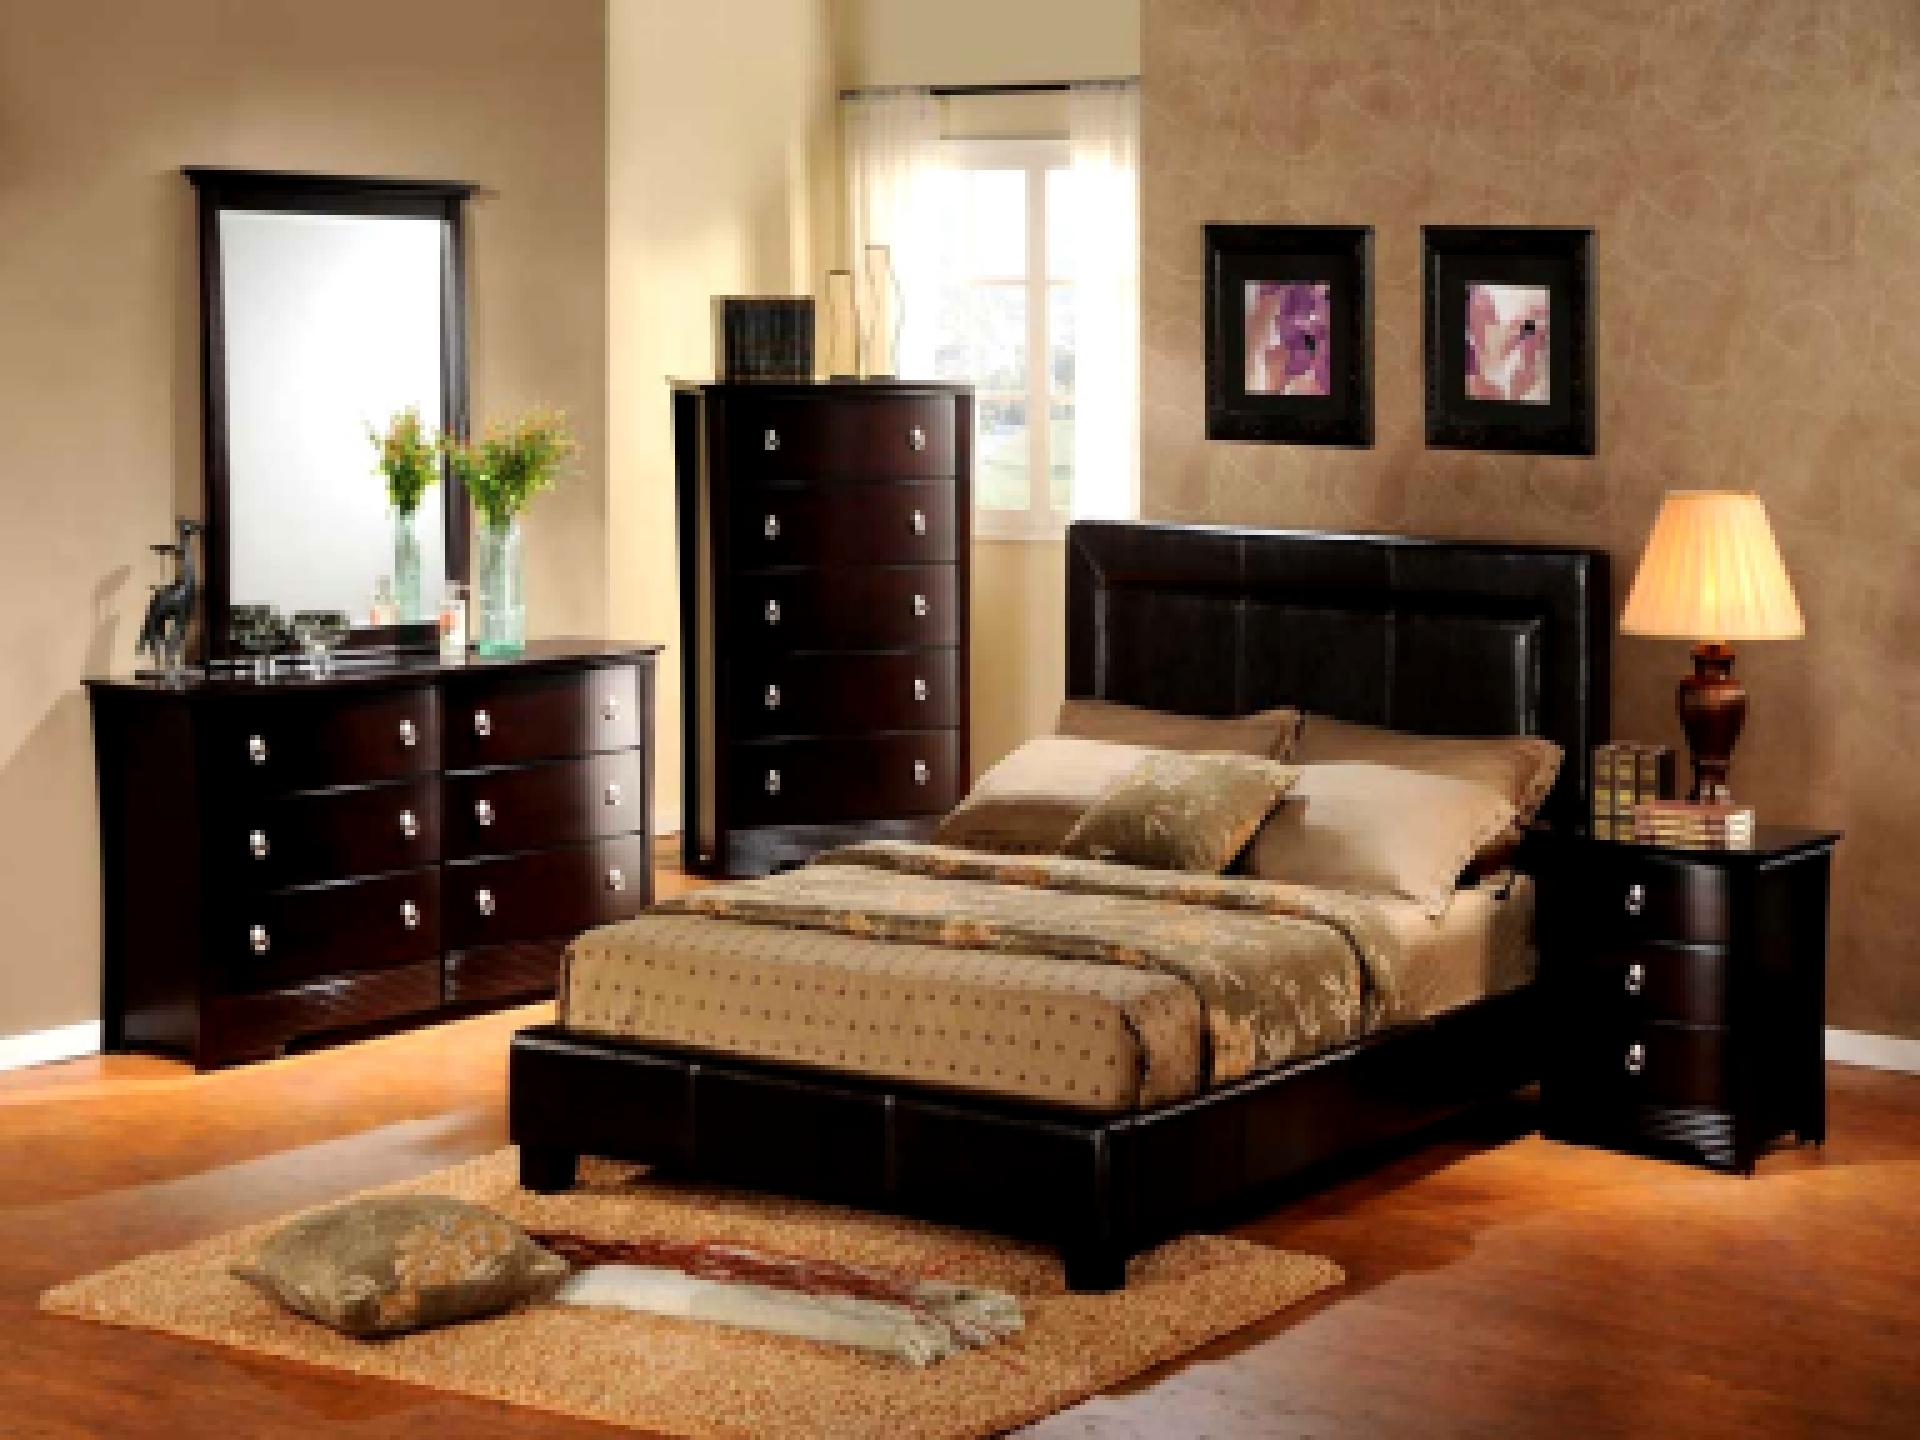 Дизайн спальни в классическом стиле - это всегда модно и актуально, но испо...